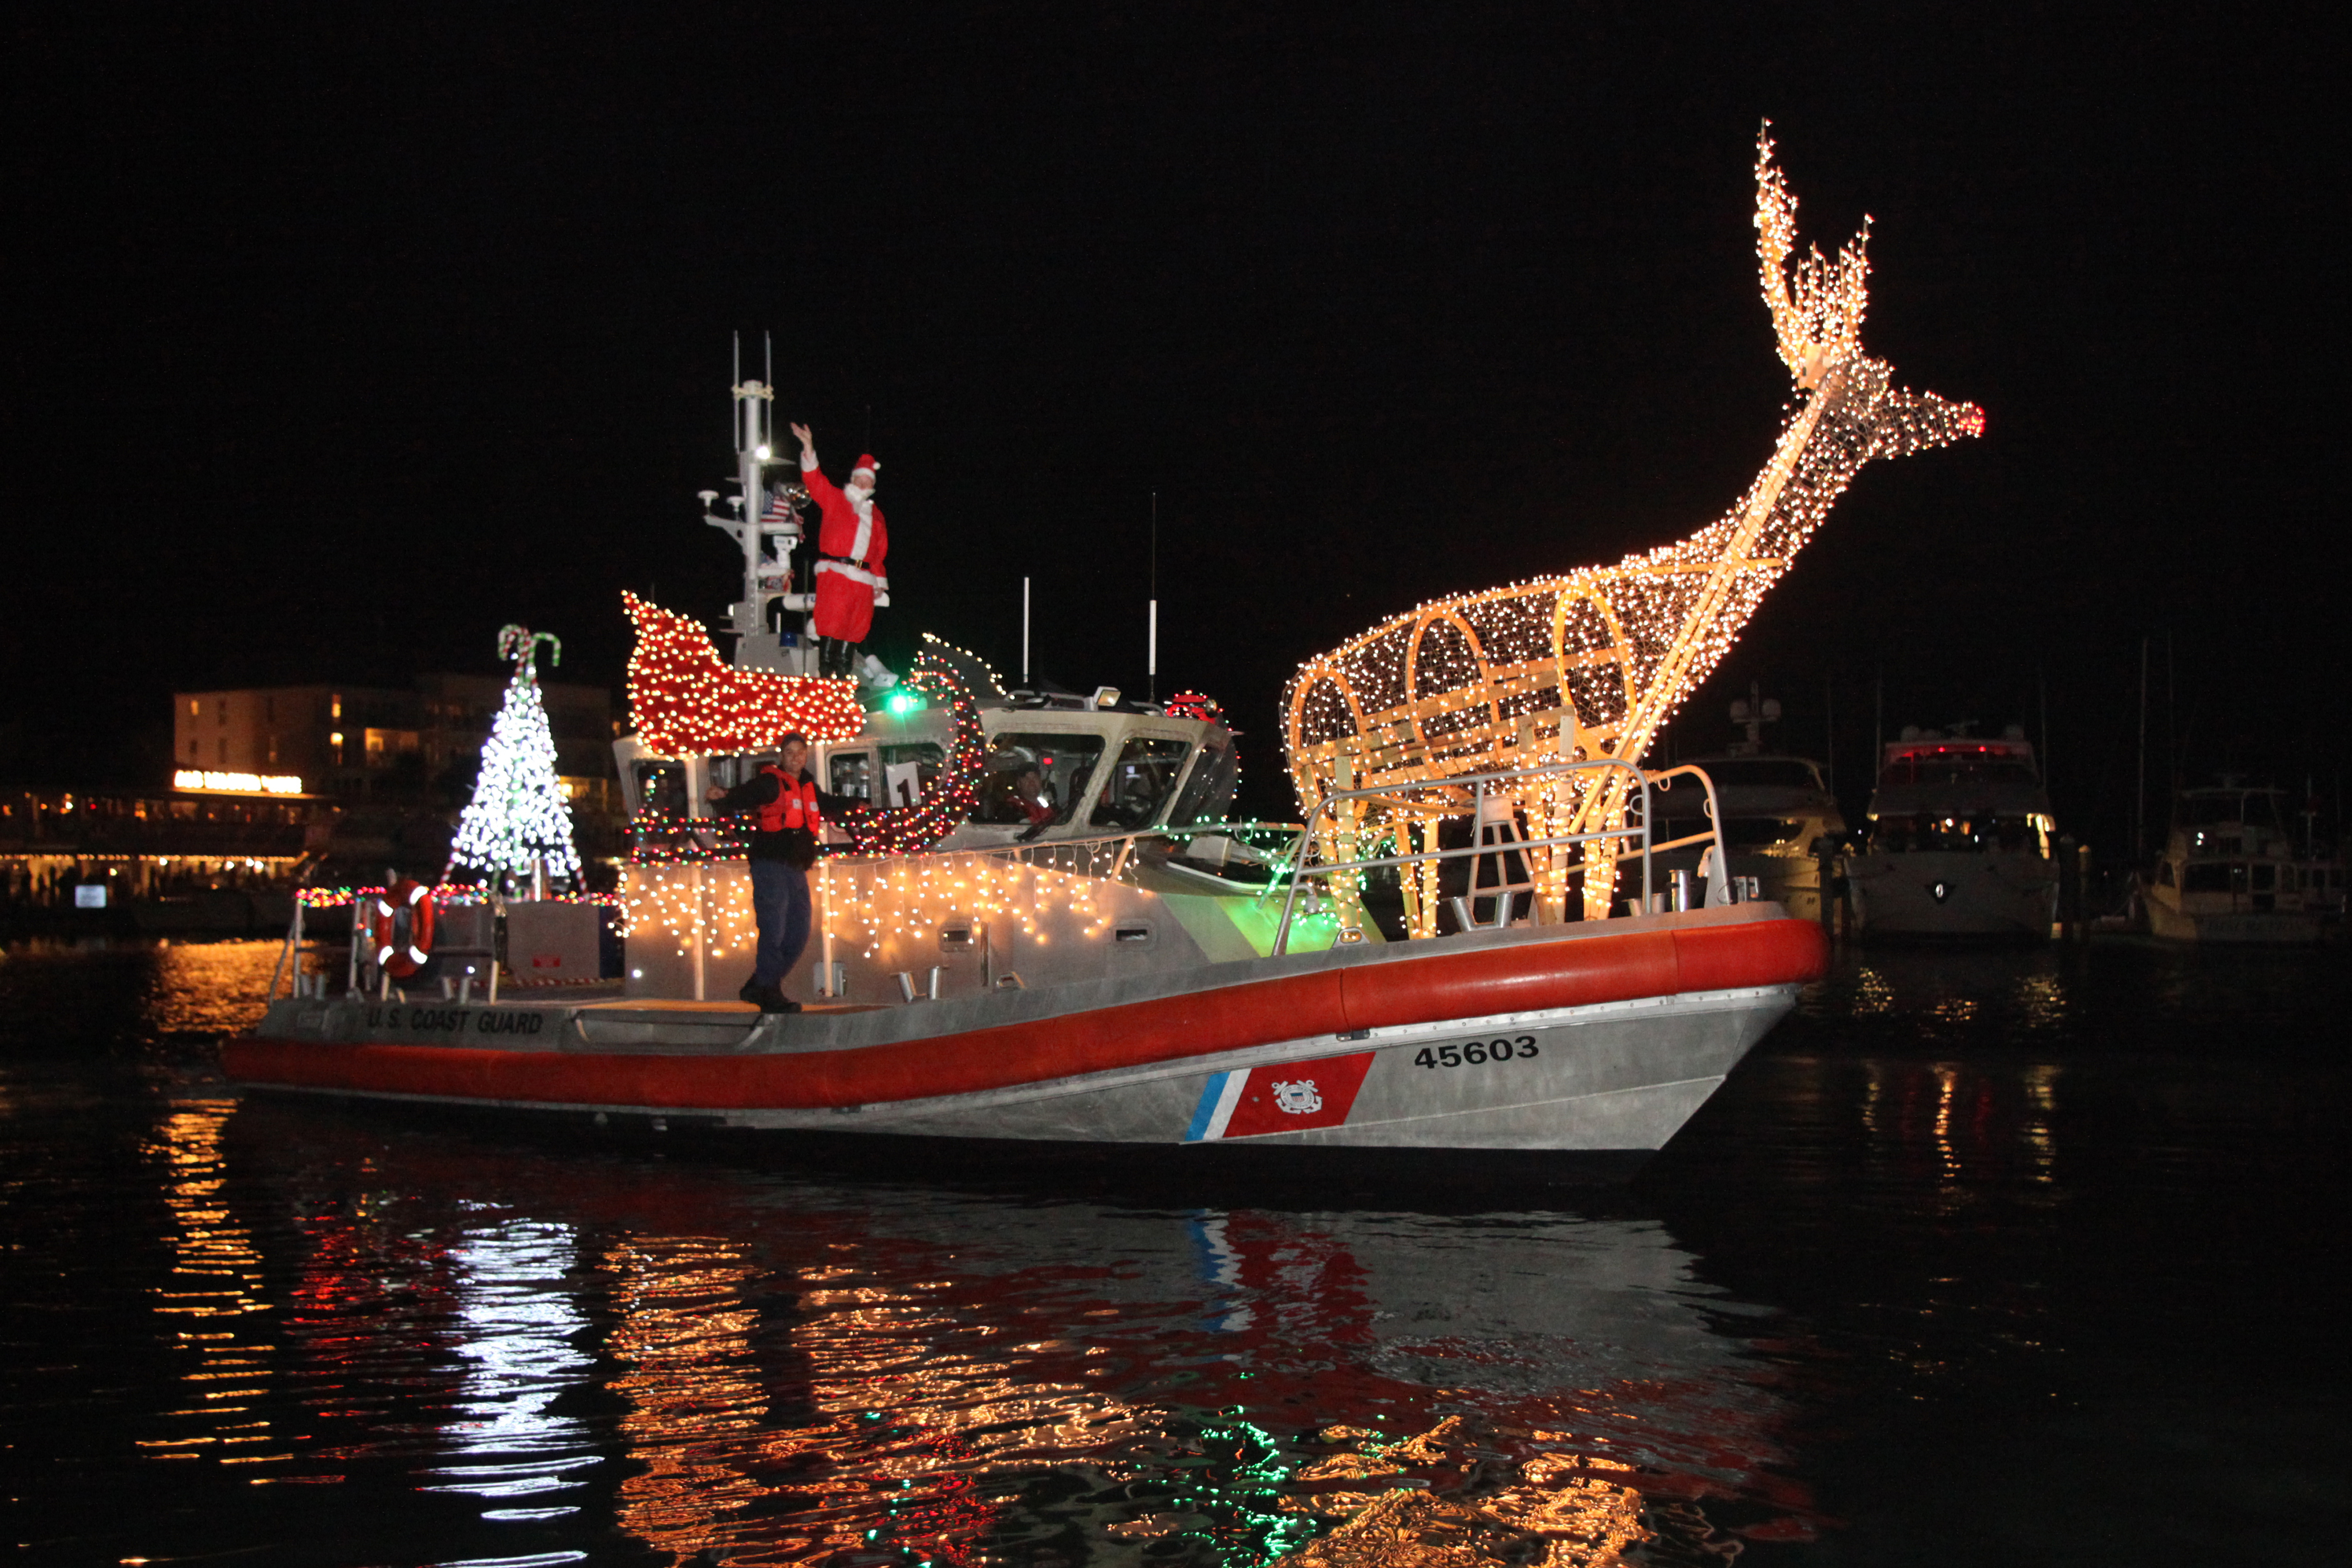 Schooner Wharf Lighted Boat Parade 2014